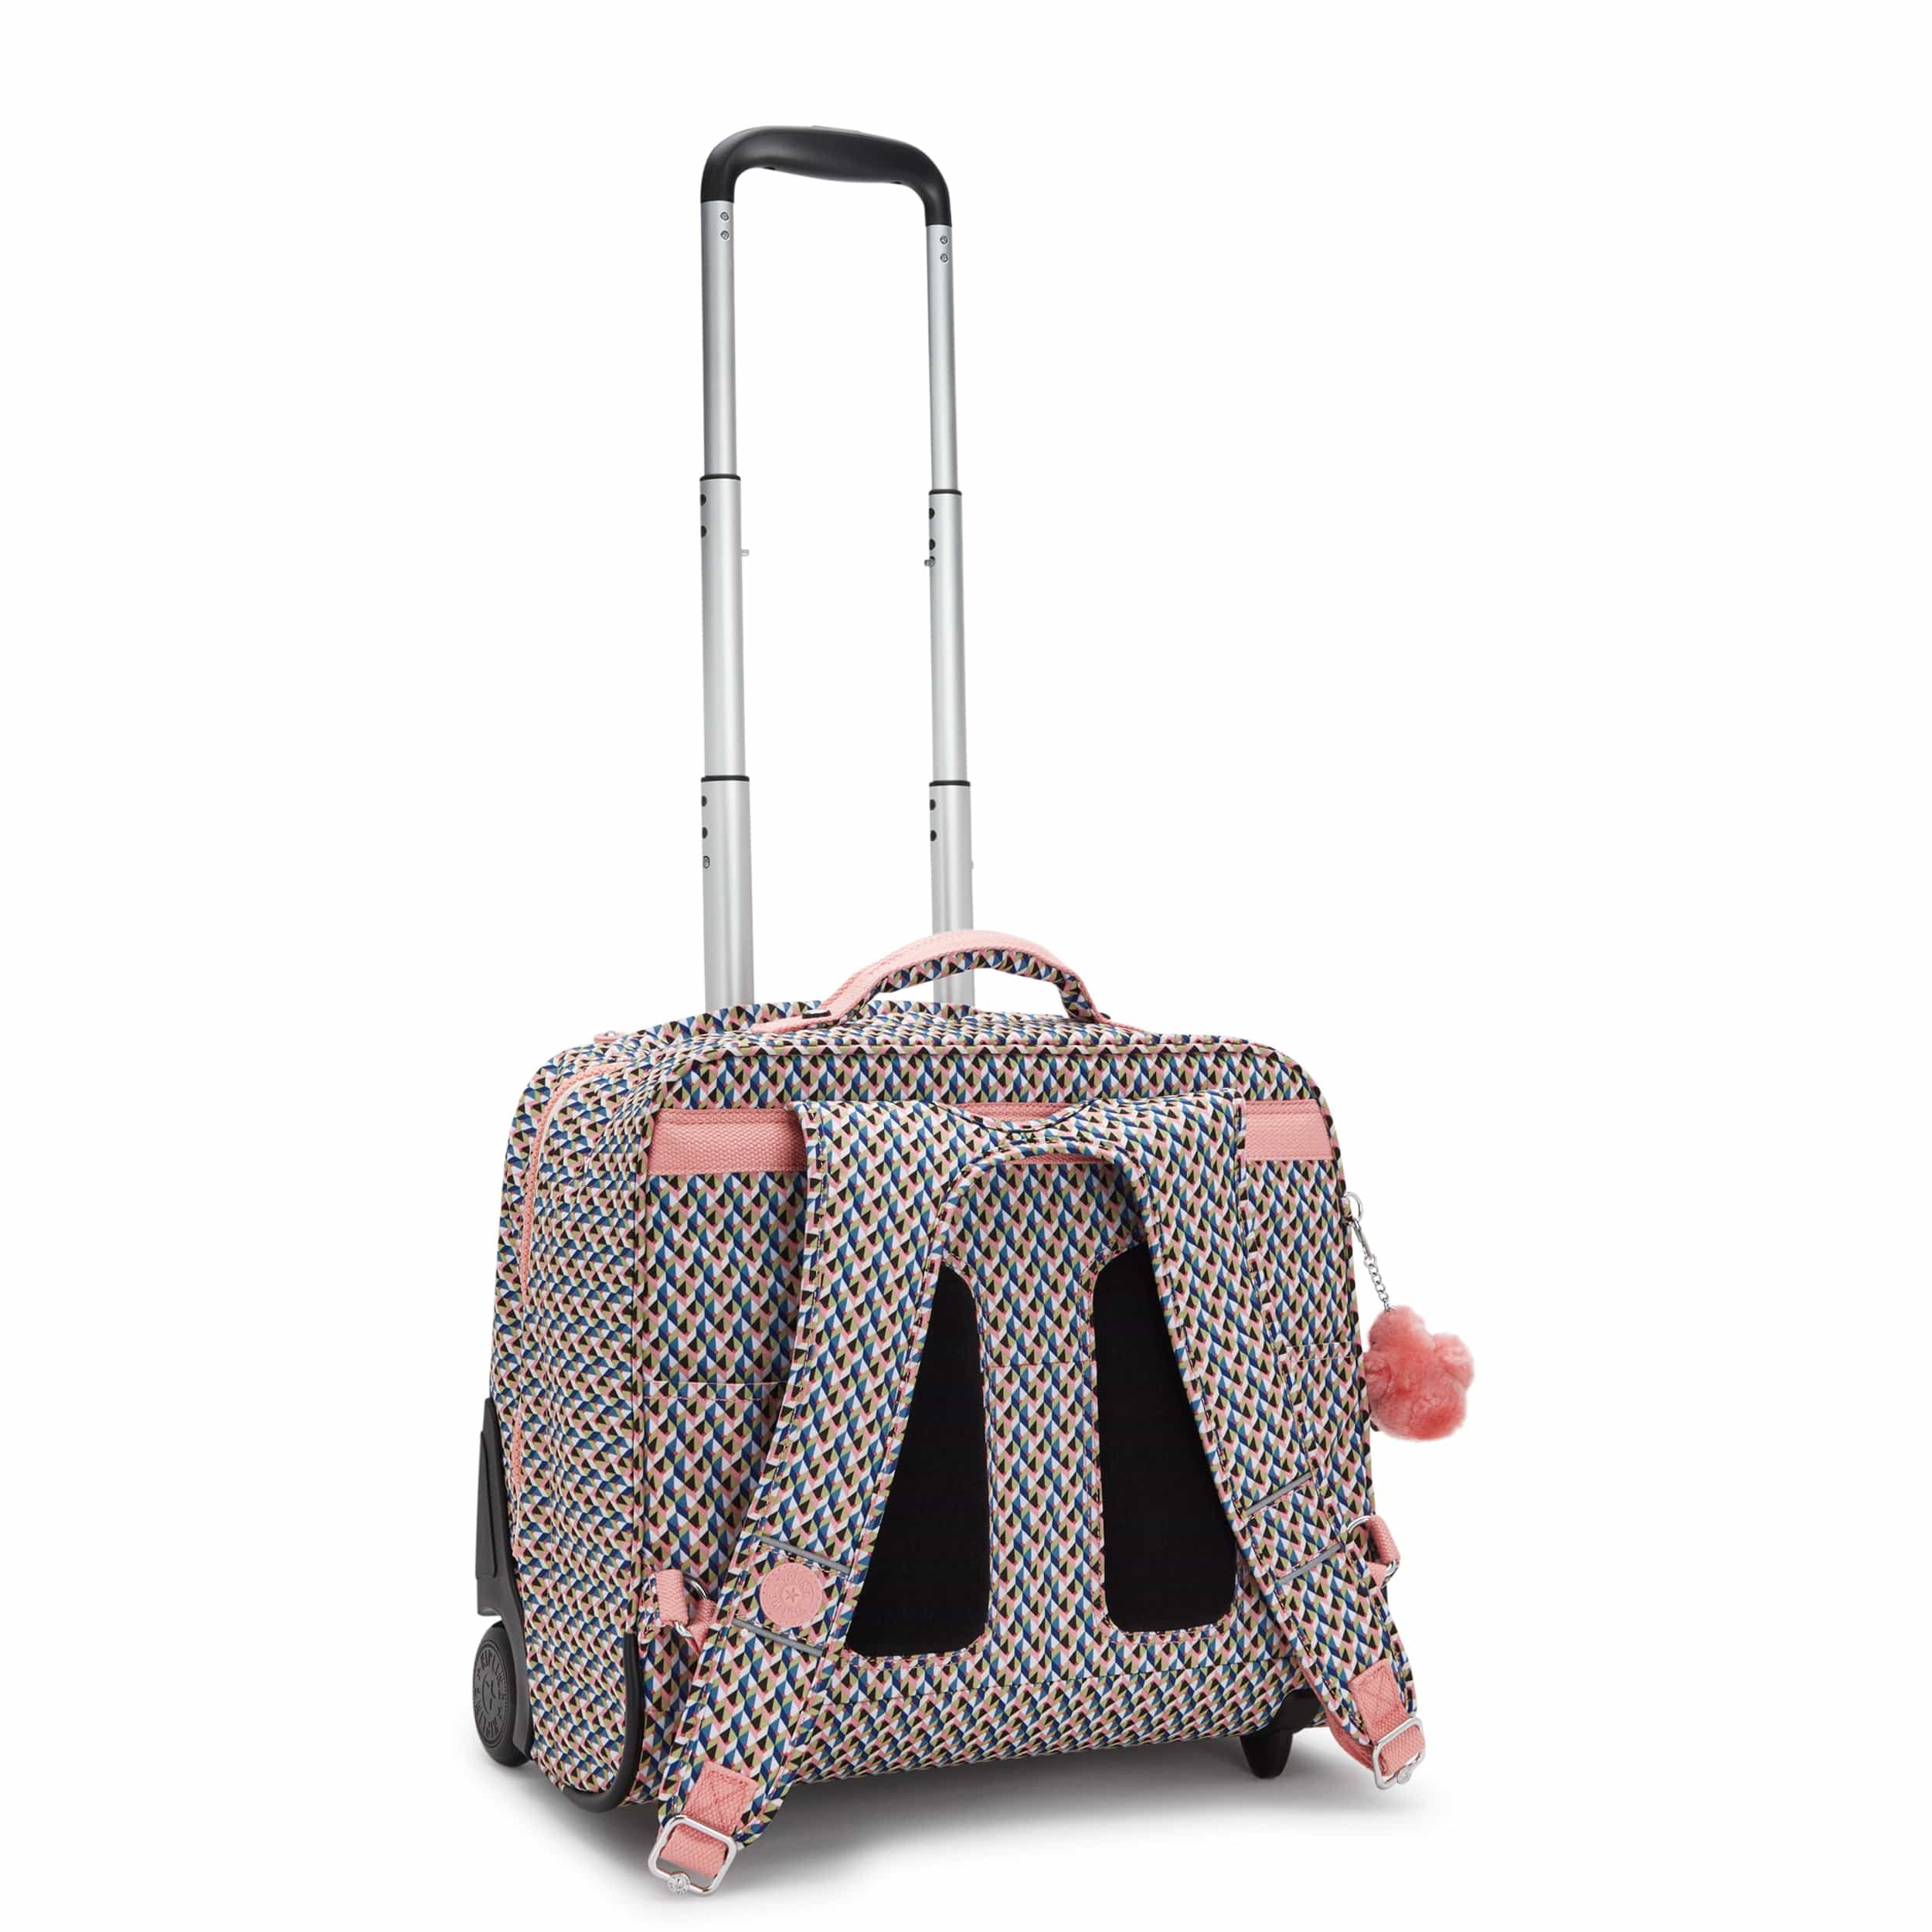 KIPLING-Giorno-Large wheeled backpack-Girly Geo-I5368-Z84